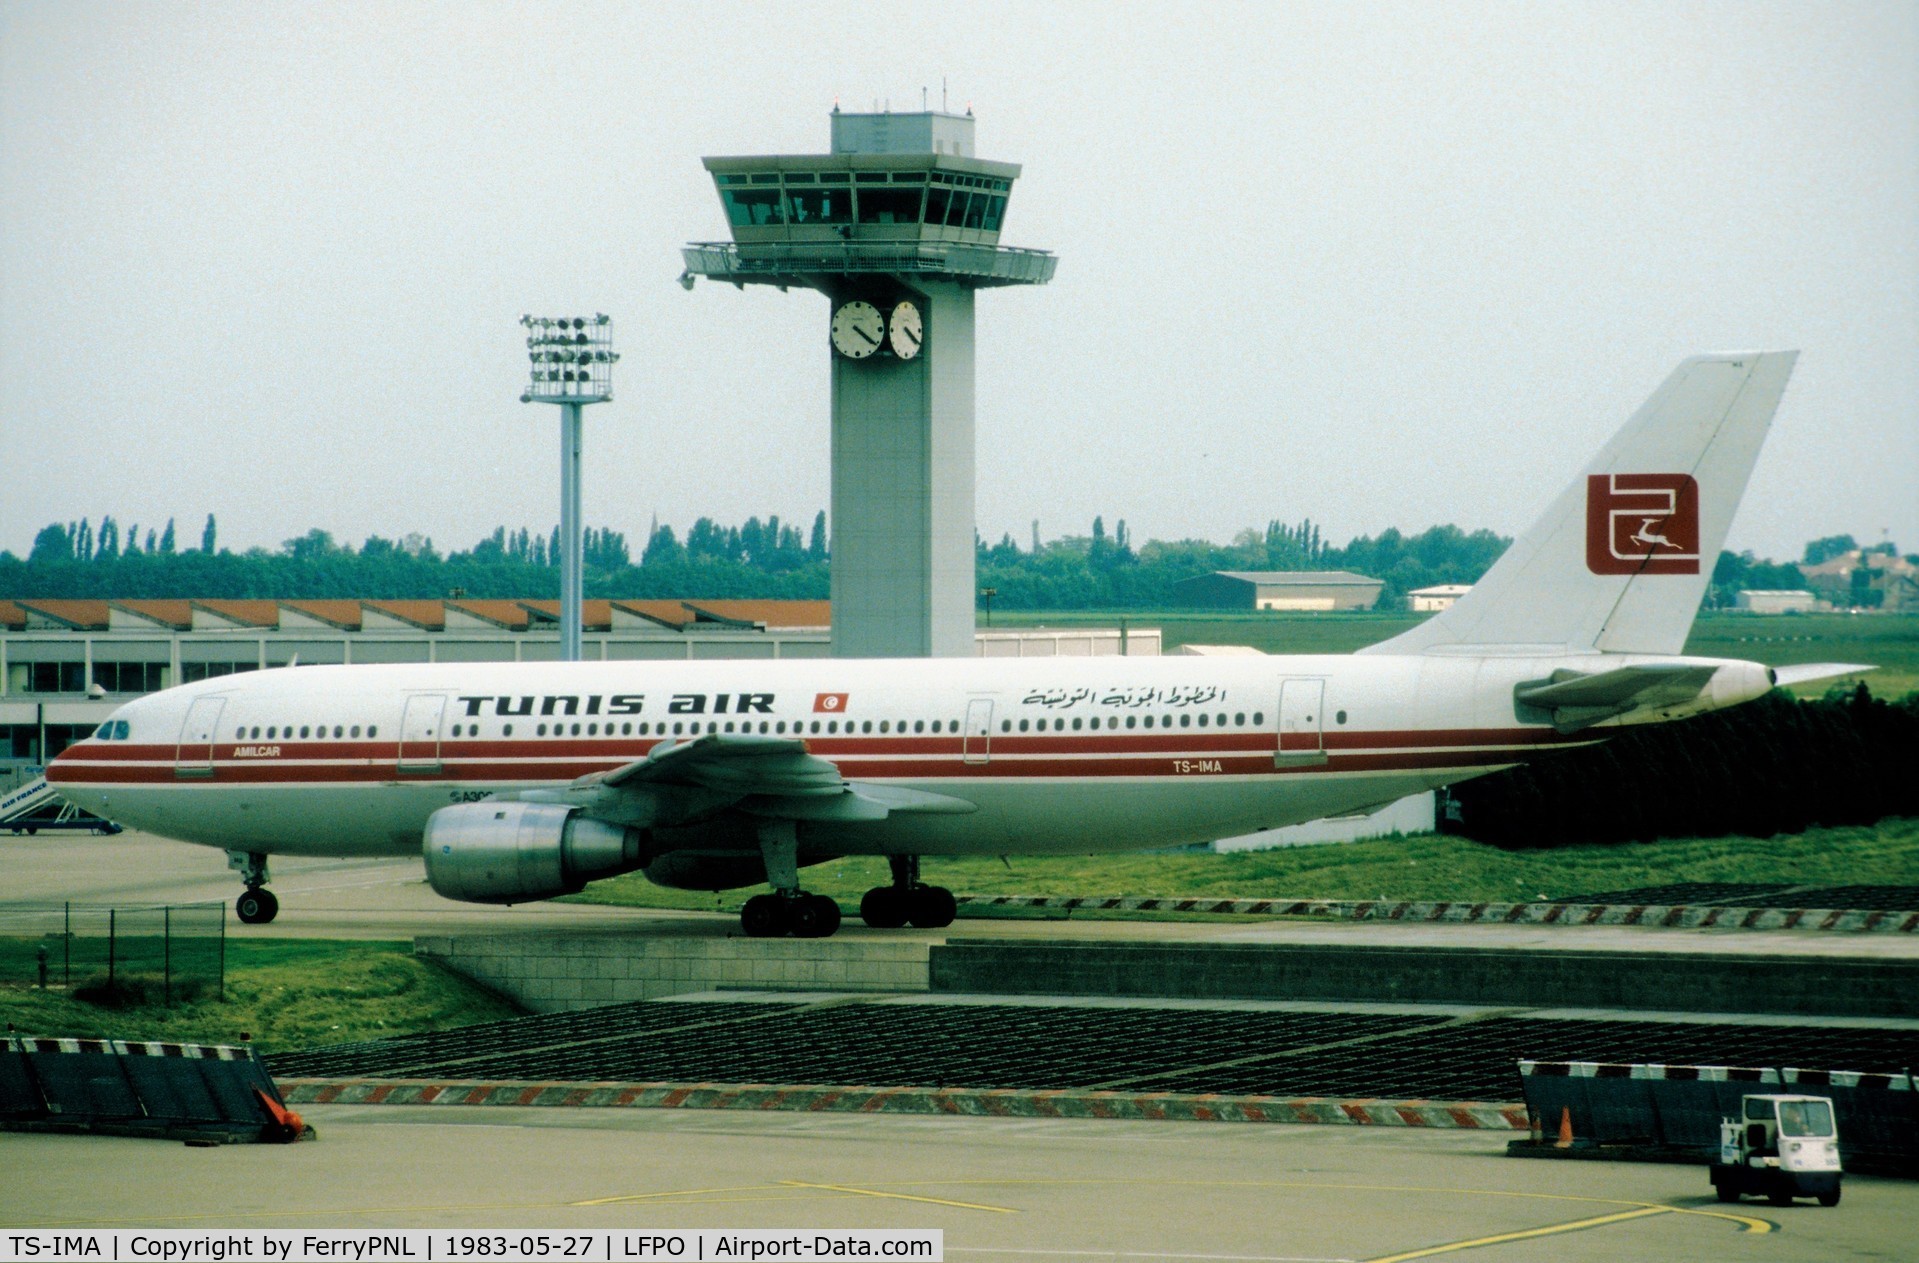 TS-IMA, 1982 Airbus A300B4-203 C/N 188, Tunisair A300, their first wide body aircraft